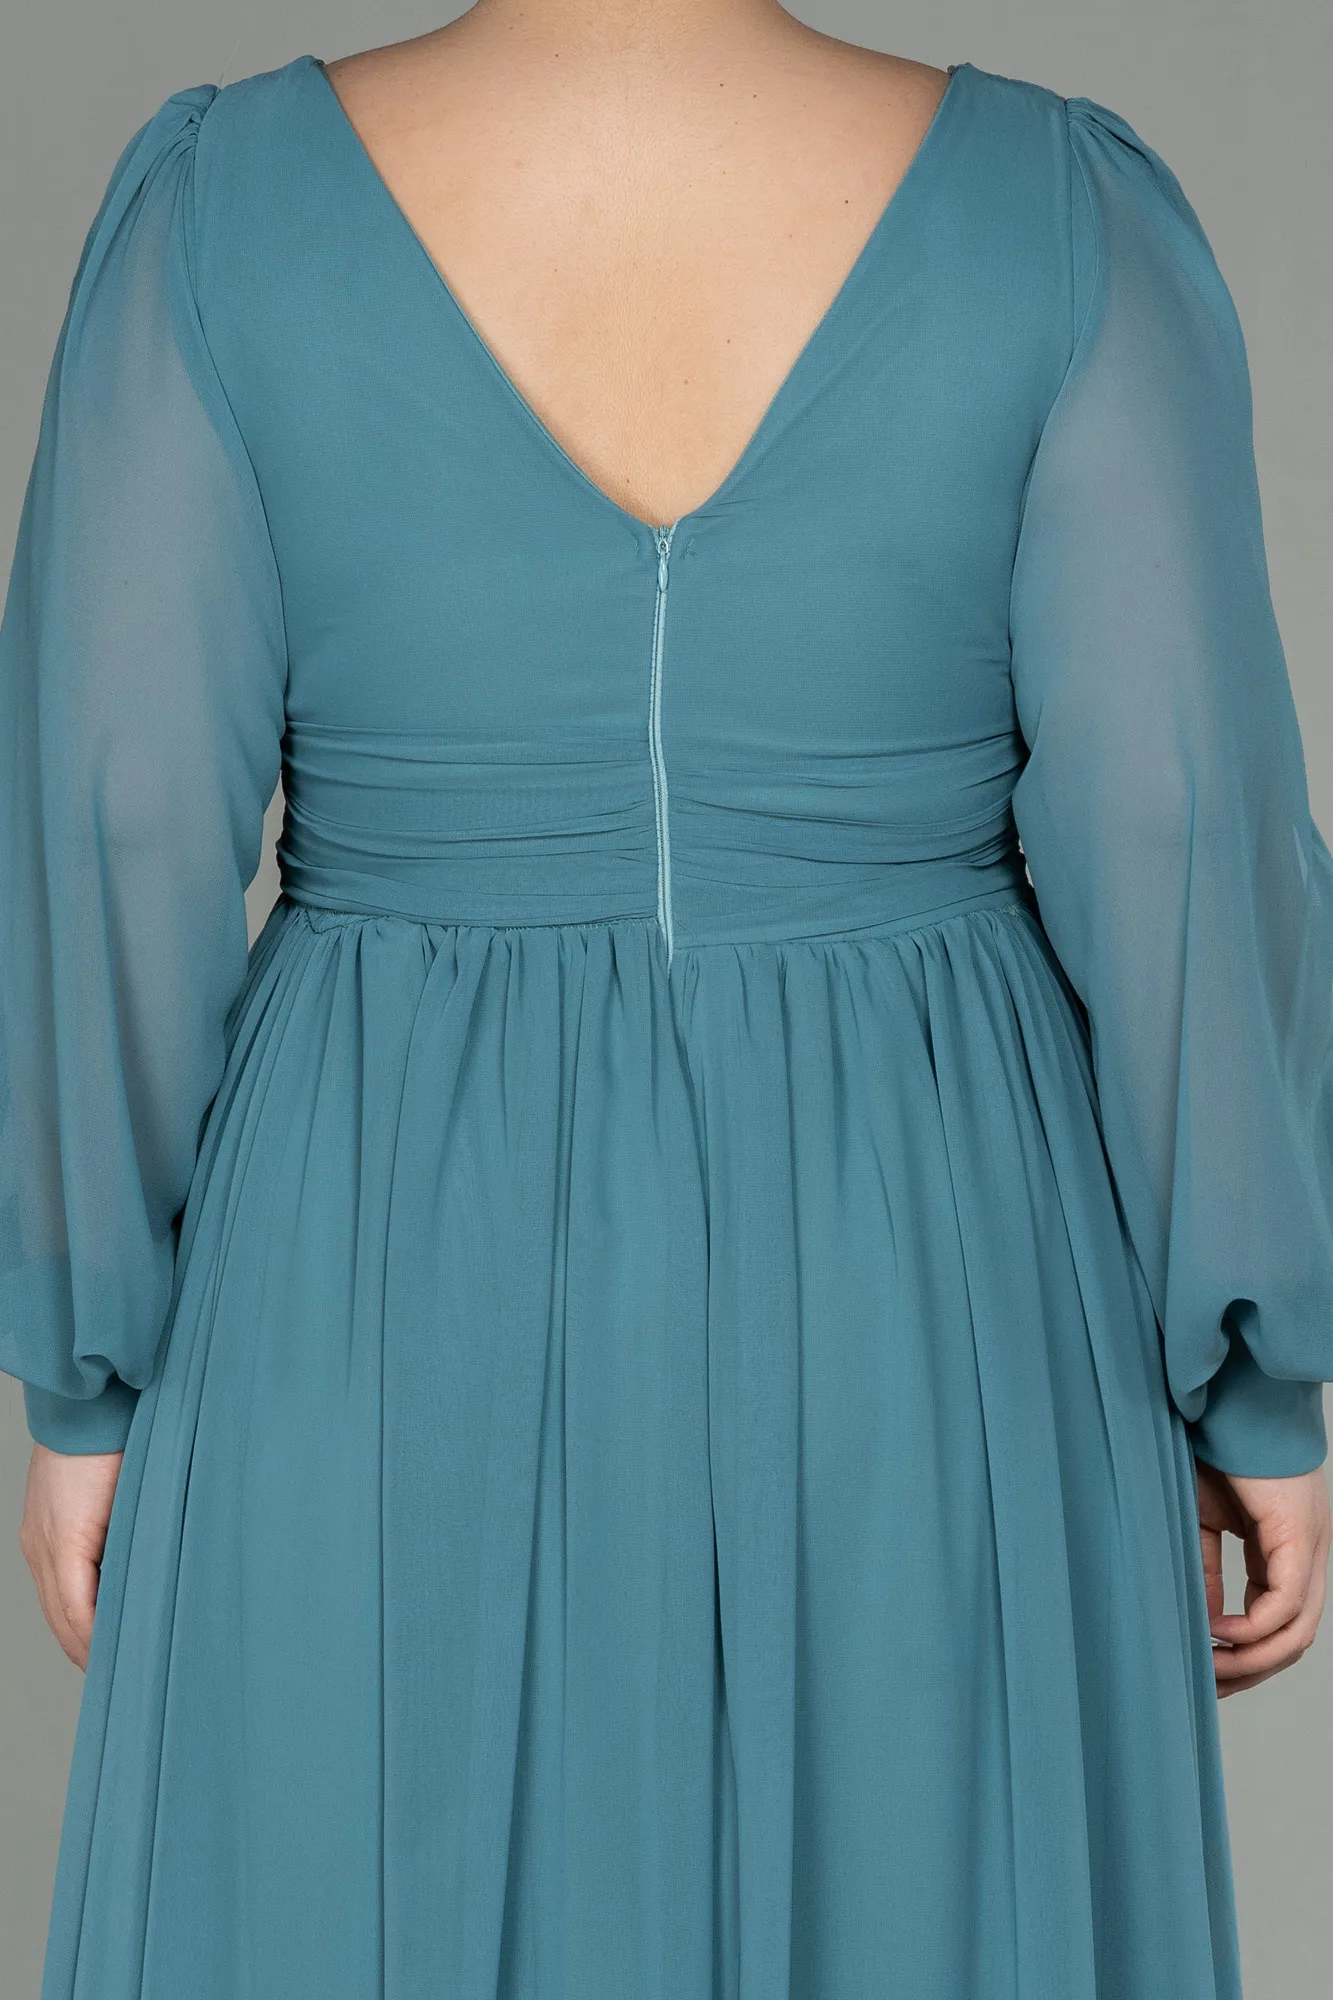 Turquoise-Long Chiffon Oversized Evening Dress ABU1988